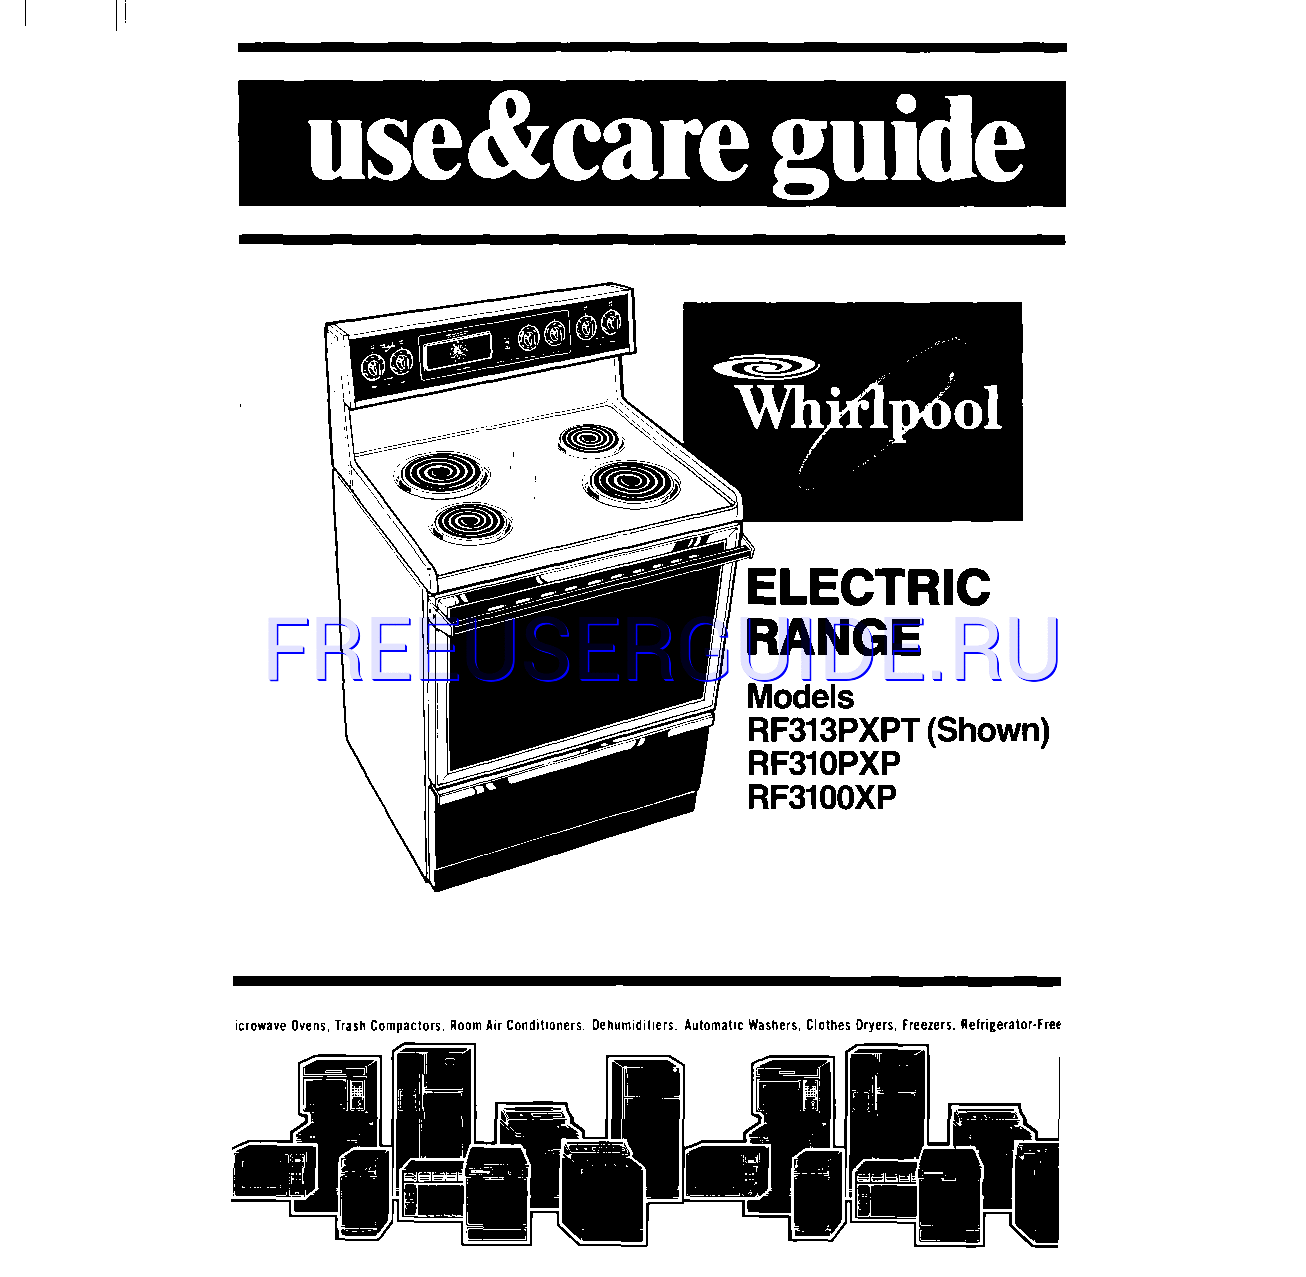 Leer online Manual de usuario para Whirlpool RF31OOXP (Page 1)